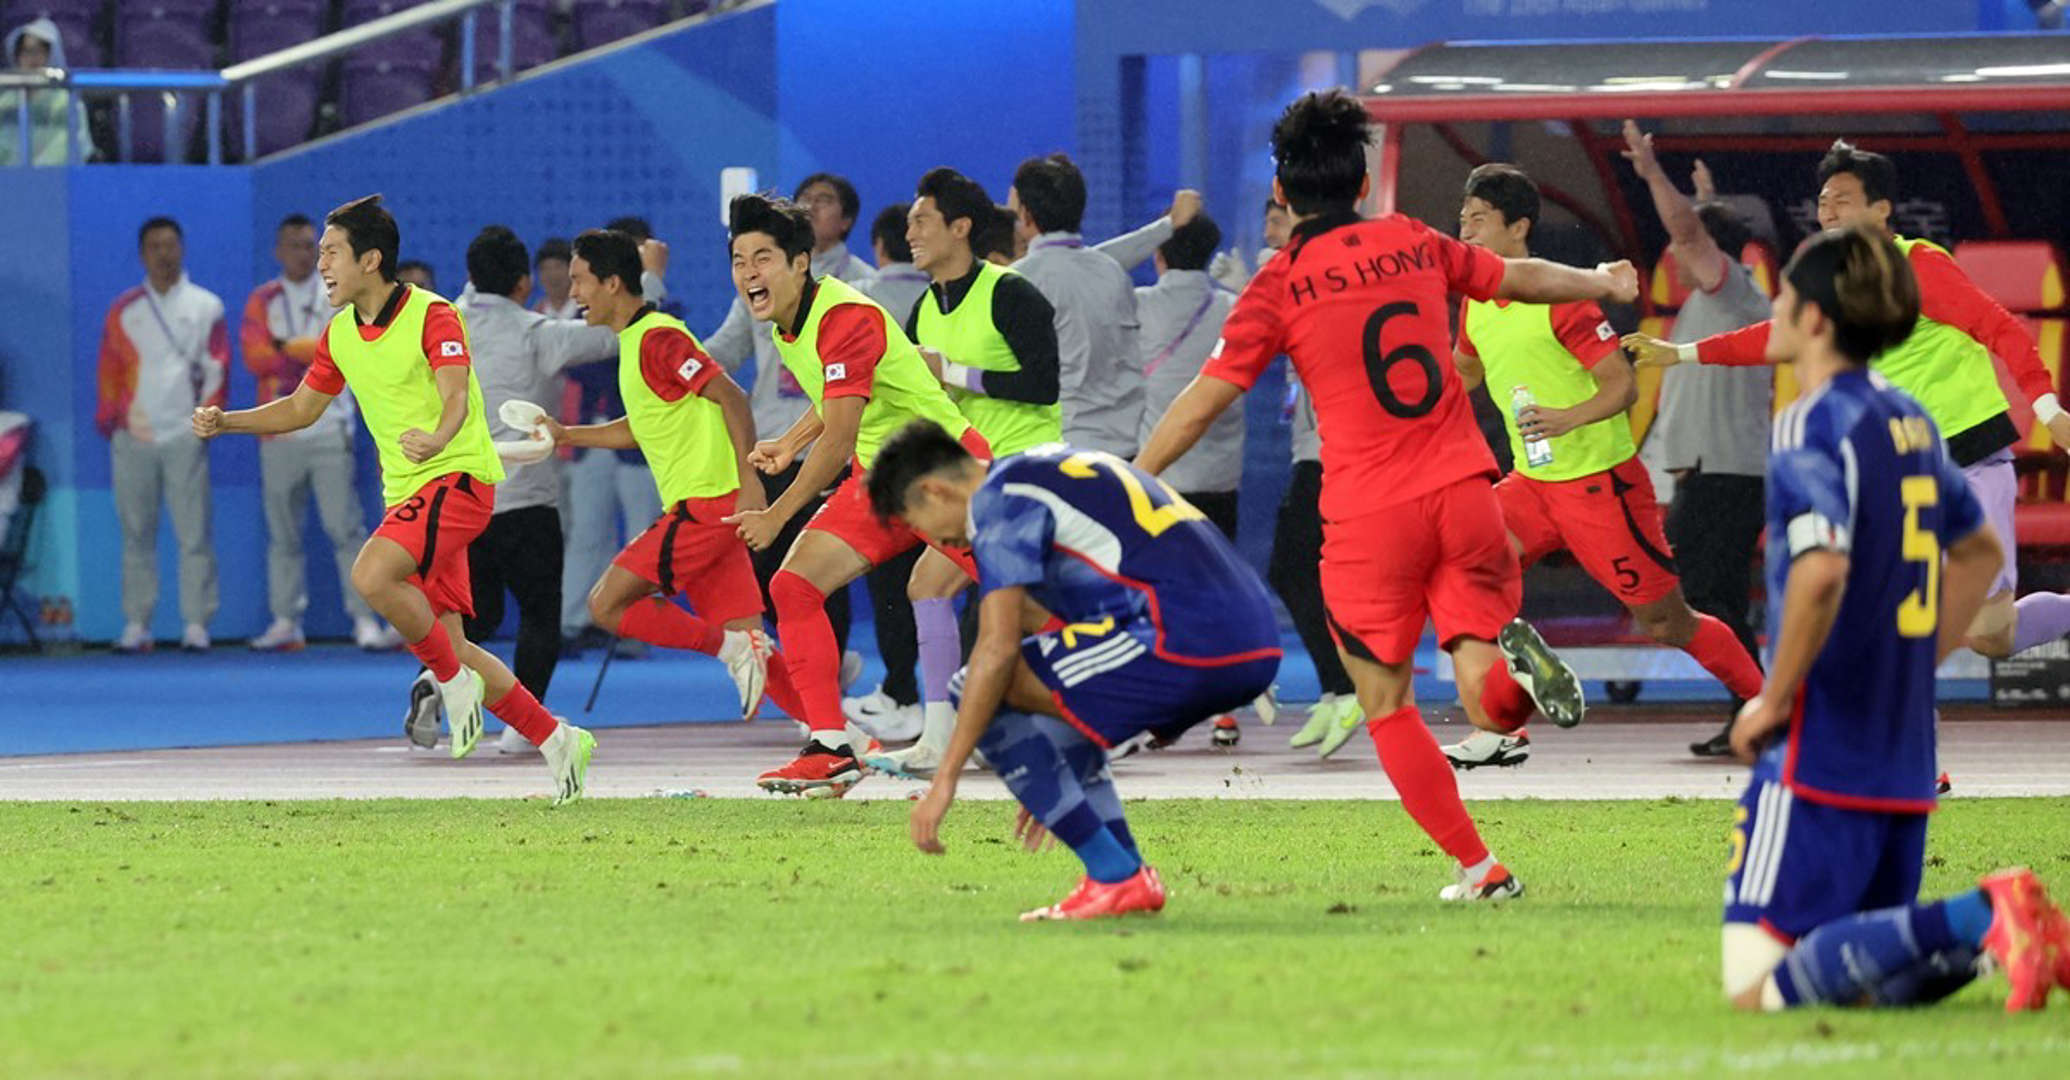 일본의 소심한 복수?... 한일전 끝난 뒤 일본 축구협회에 올라온 사진 한 장 (+이유)